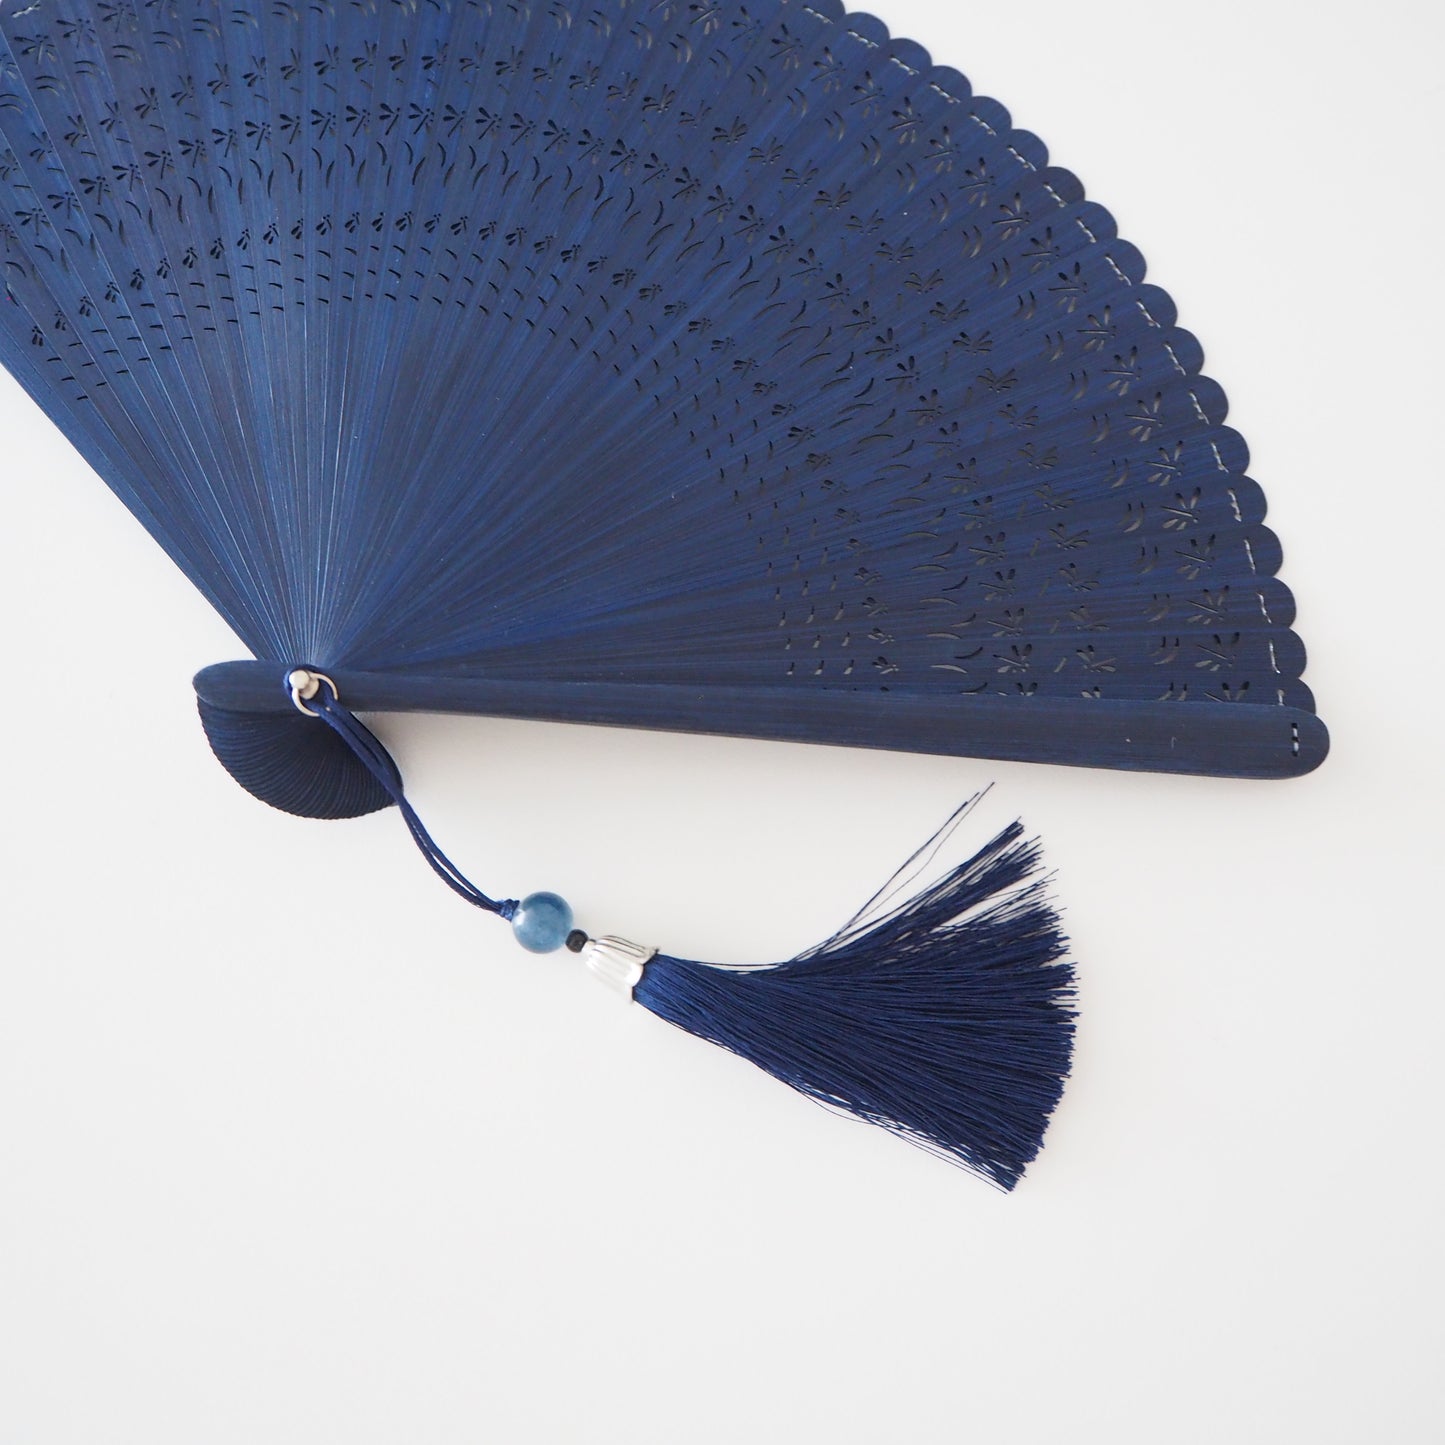 Wooden Folding Fan - Dragonfly, blue